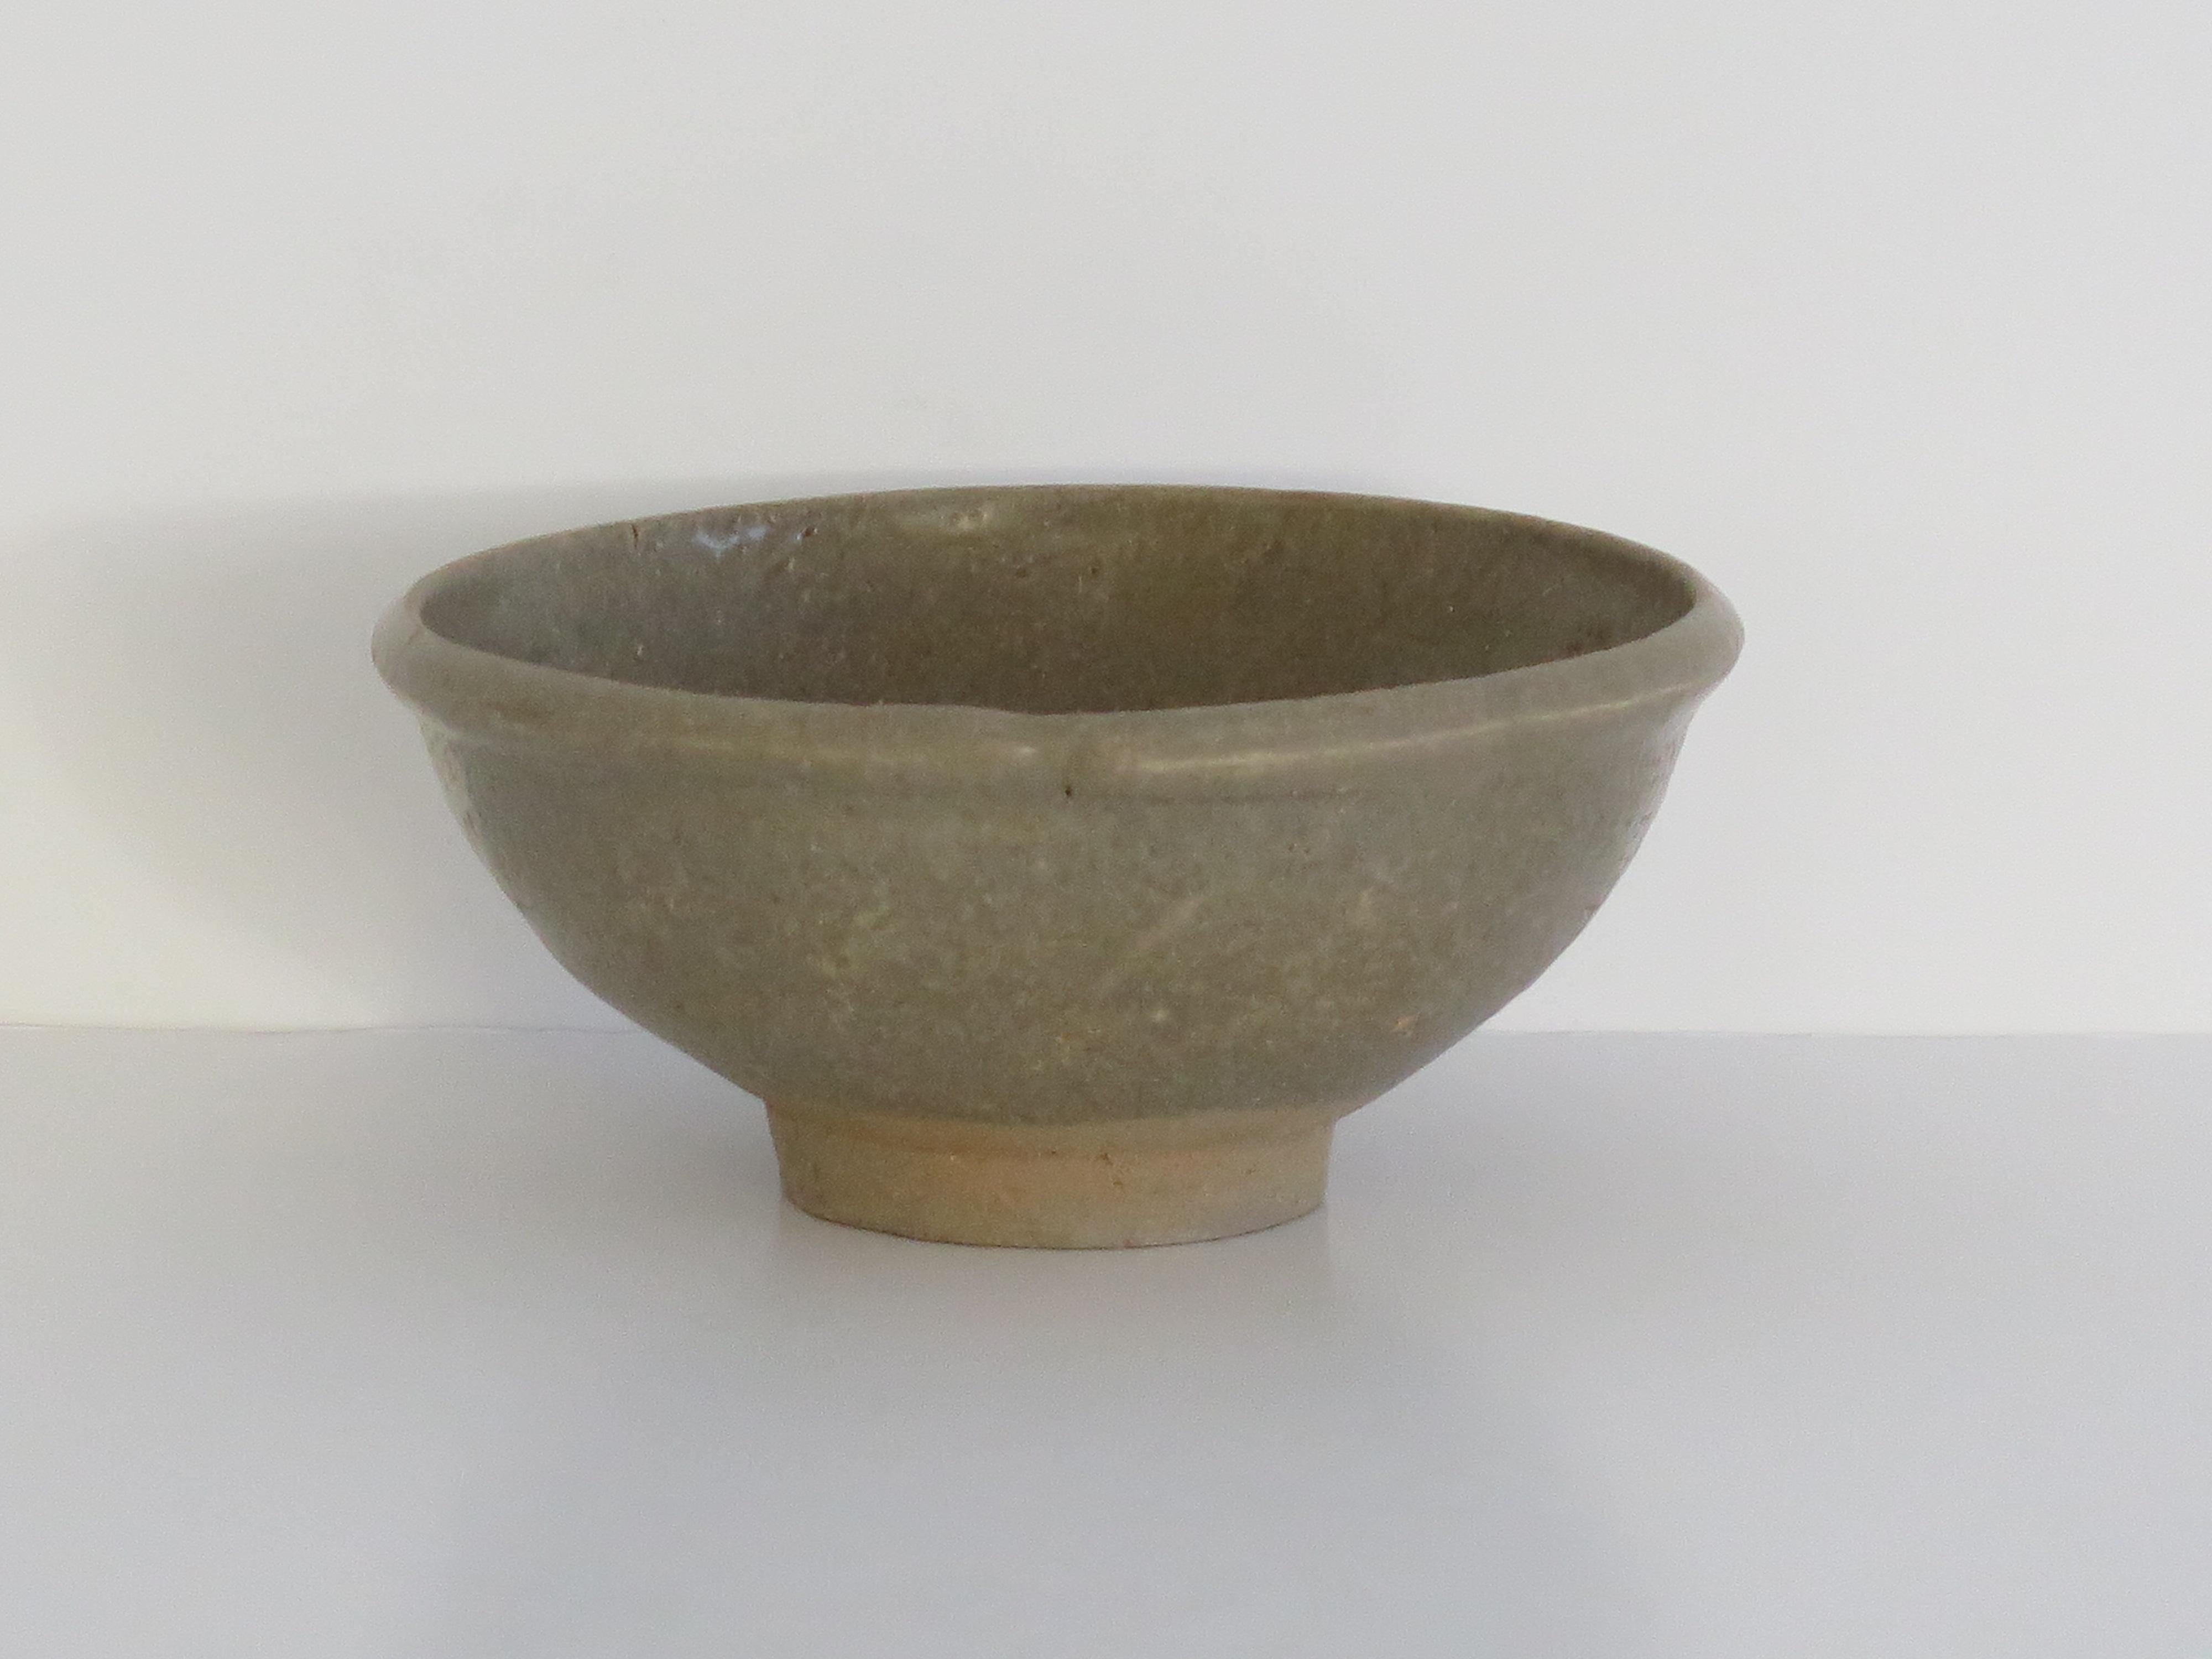 Il s'agit d'un très ancien bol en grès d'exportation chinois Longquan Celadon, que nous datons du début de la dynastie Ming ou de la fin de la dynastie Yuan, vers 1400 ou plus tôt.

Le bol est bien empoté, avec un bord assez épais, et repose sur un